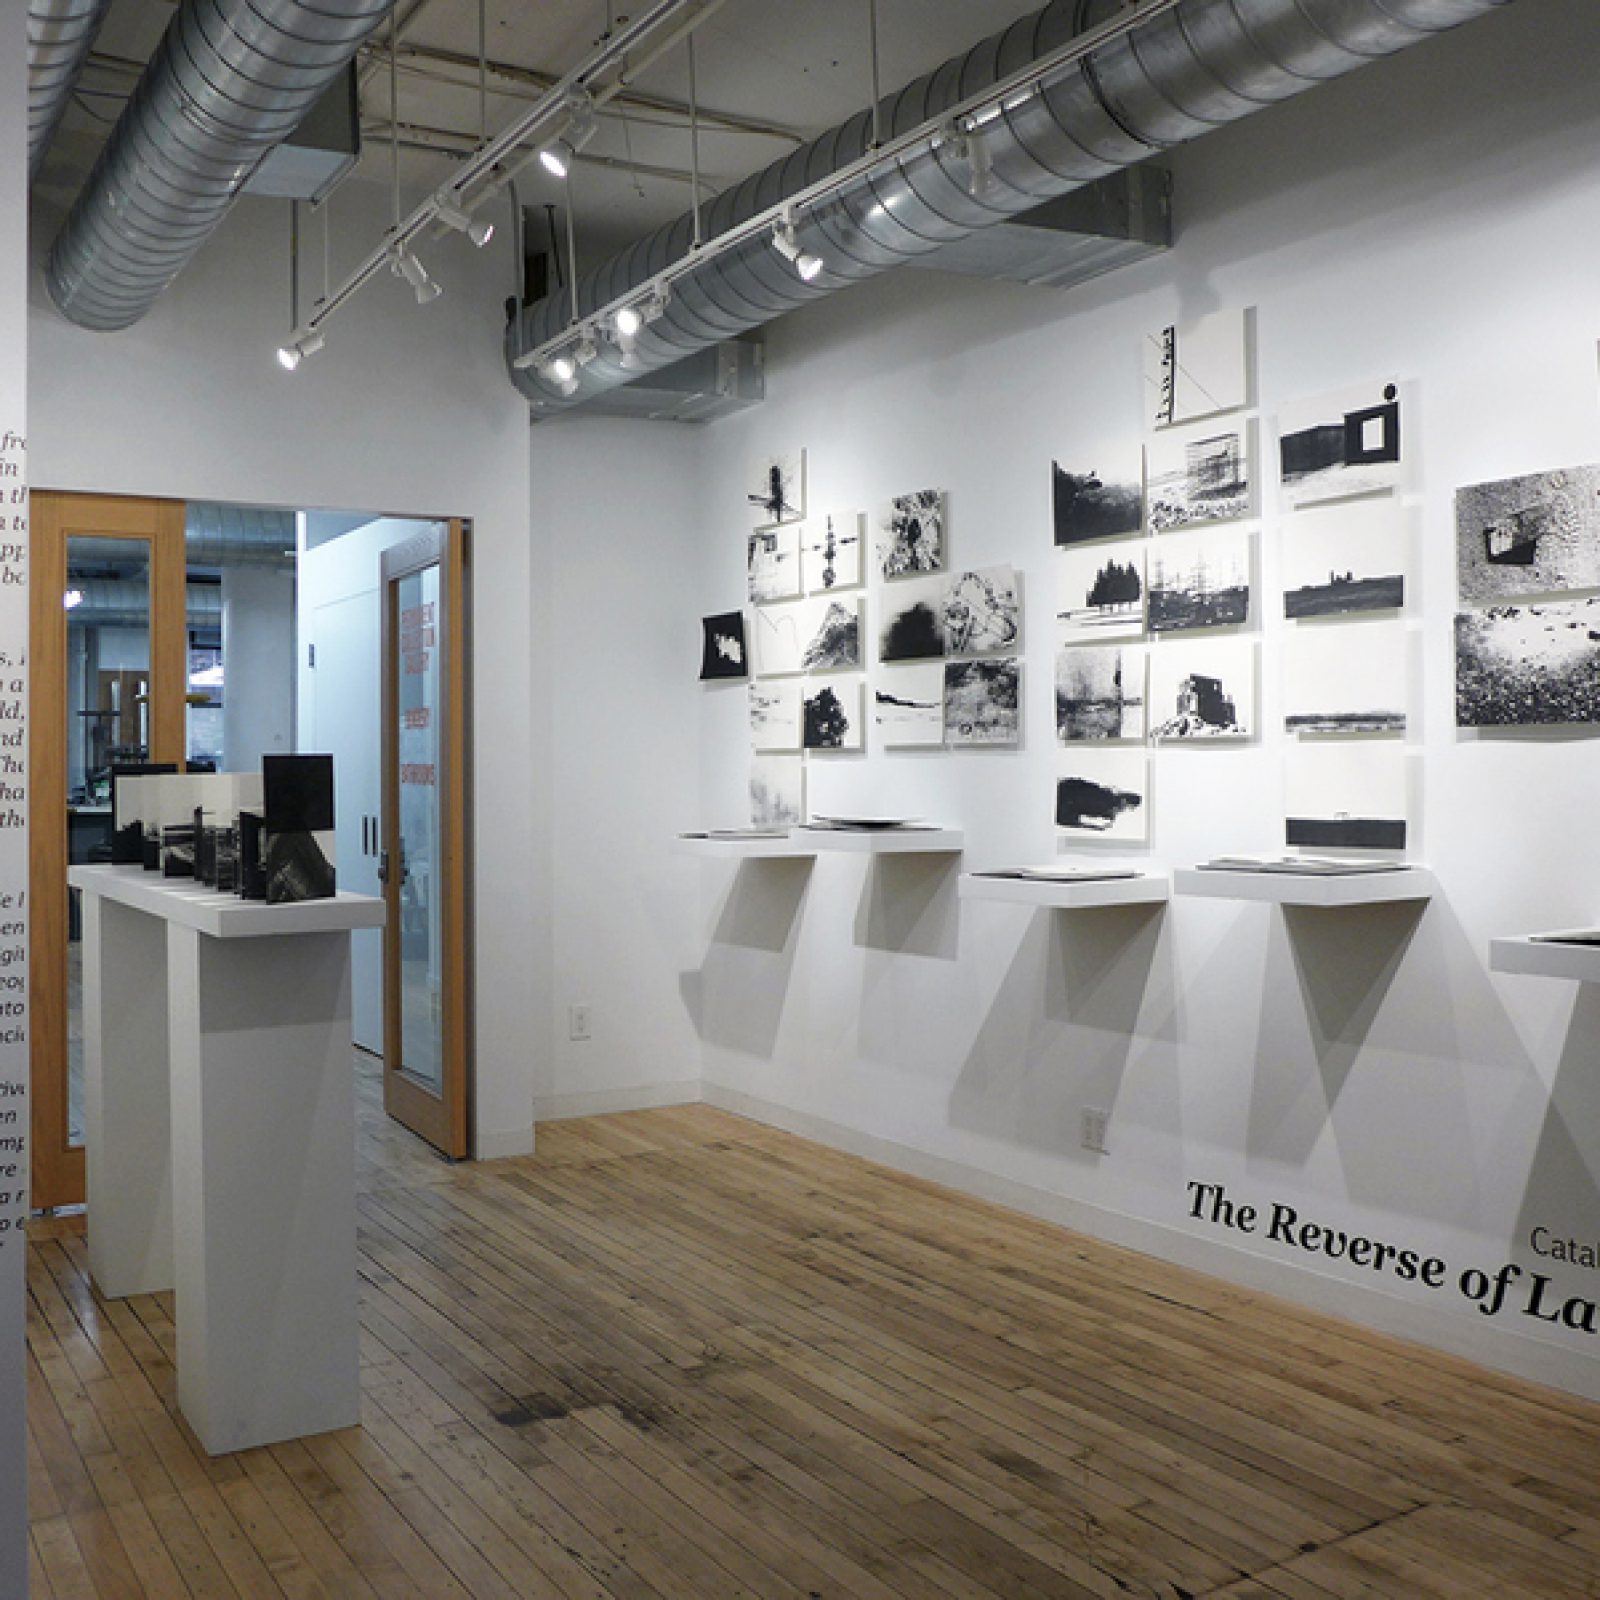 Vista de la exposición "The Reverse of the Landscape", de Catalina De la Cruz, en The Center for Book Arts, Nueva York, 2019. Cortesía de la artista